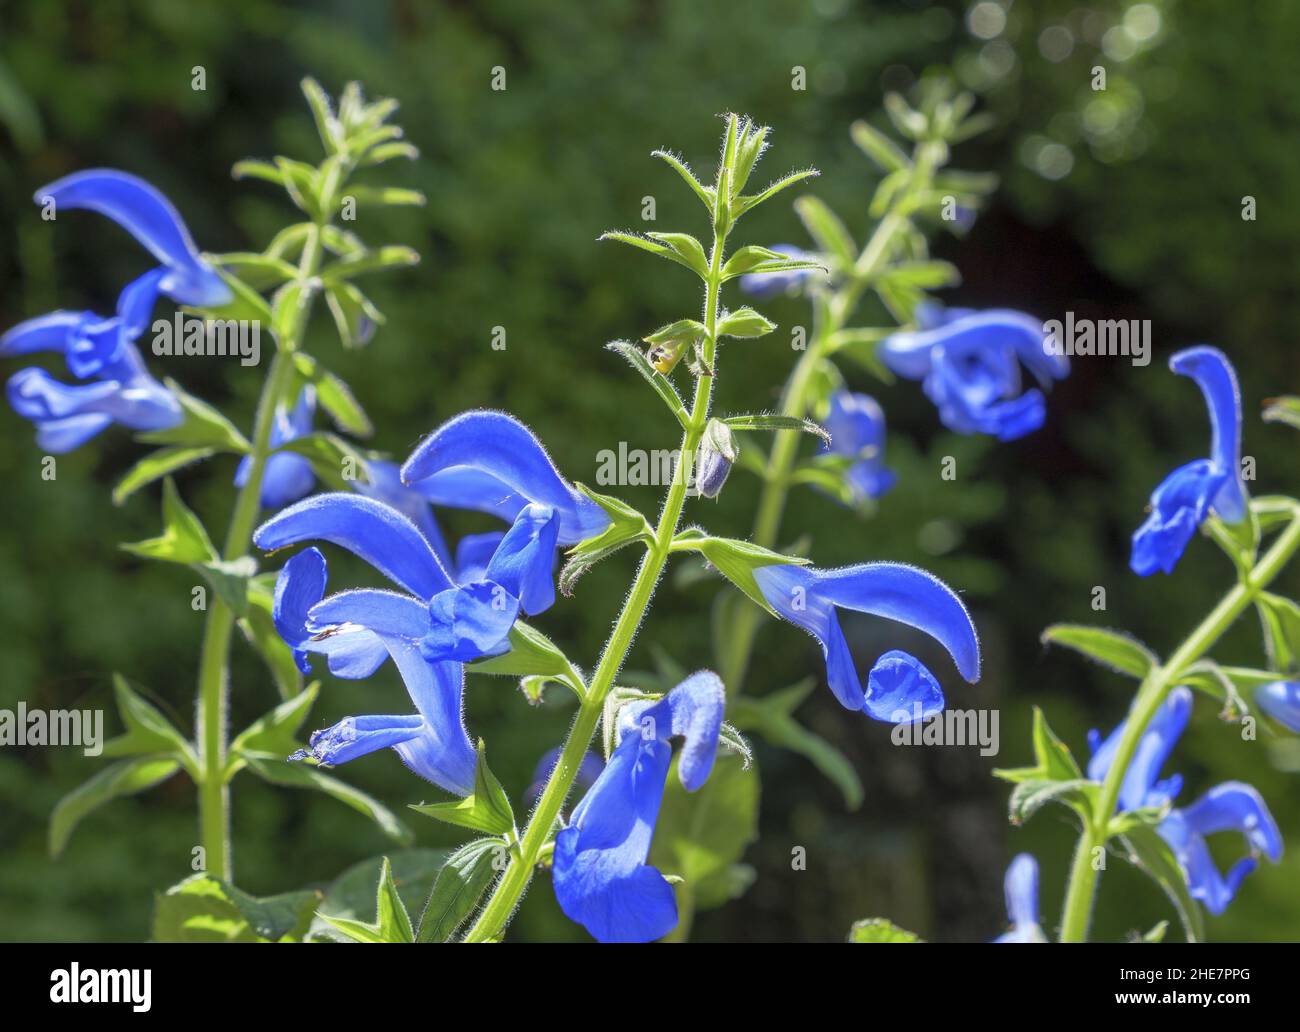 Salvia azul, patens salvia Foto de stock